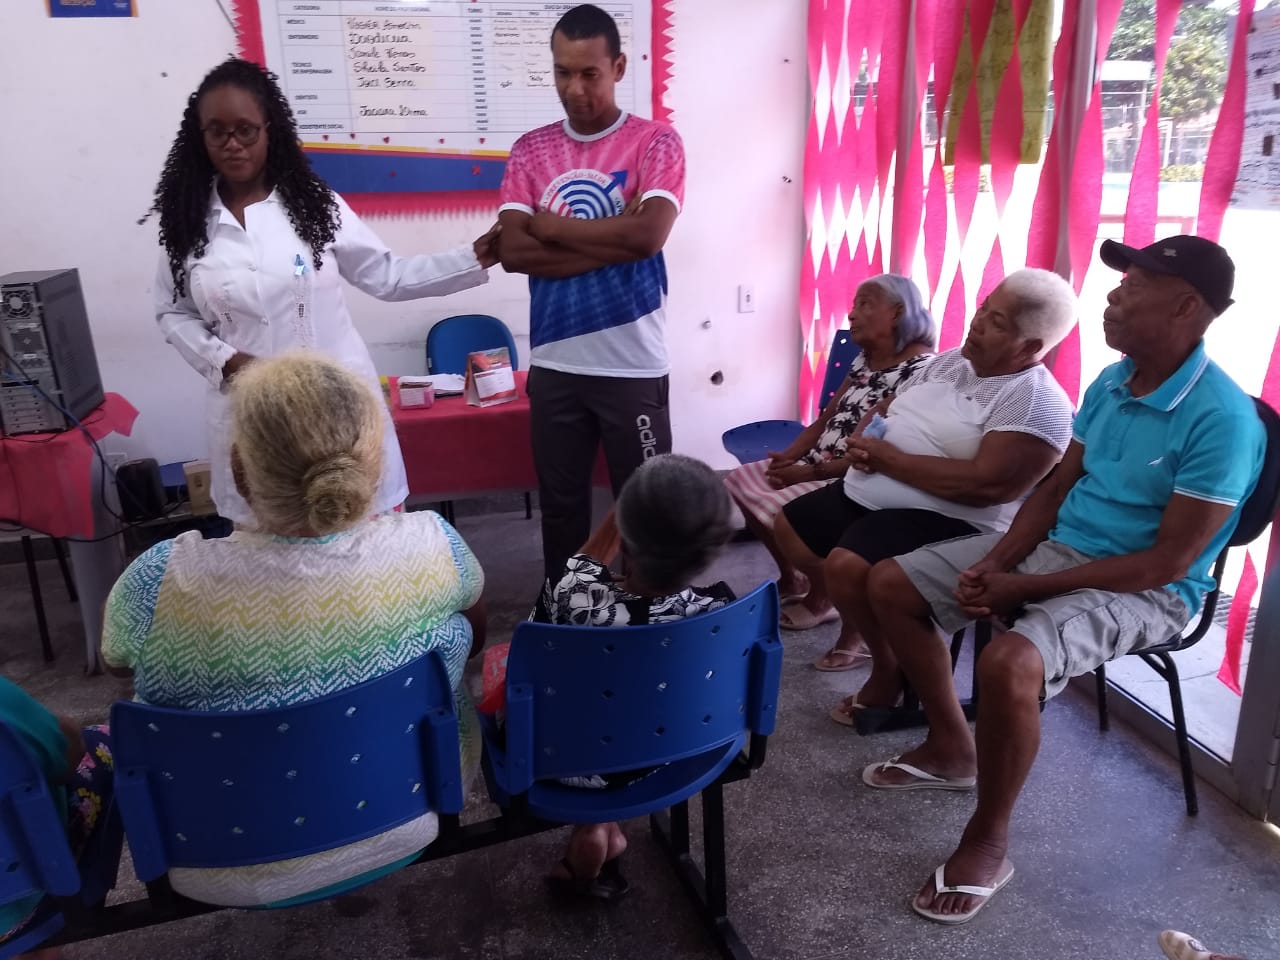 Unidade de Saúde de Santo Estevão promove saúde na terceira idade através da informação